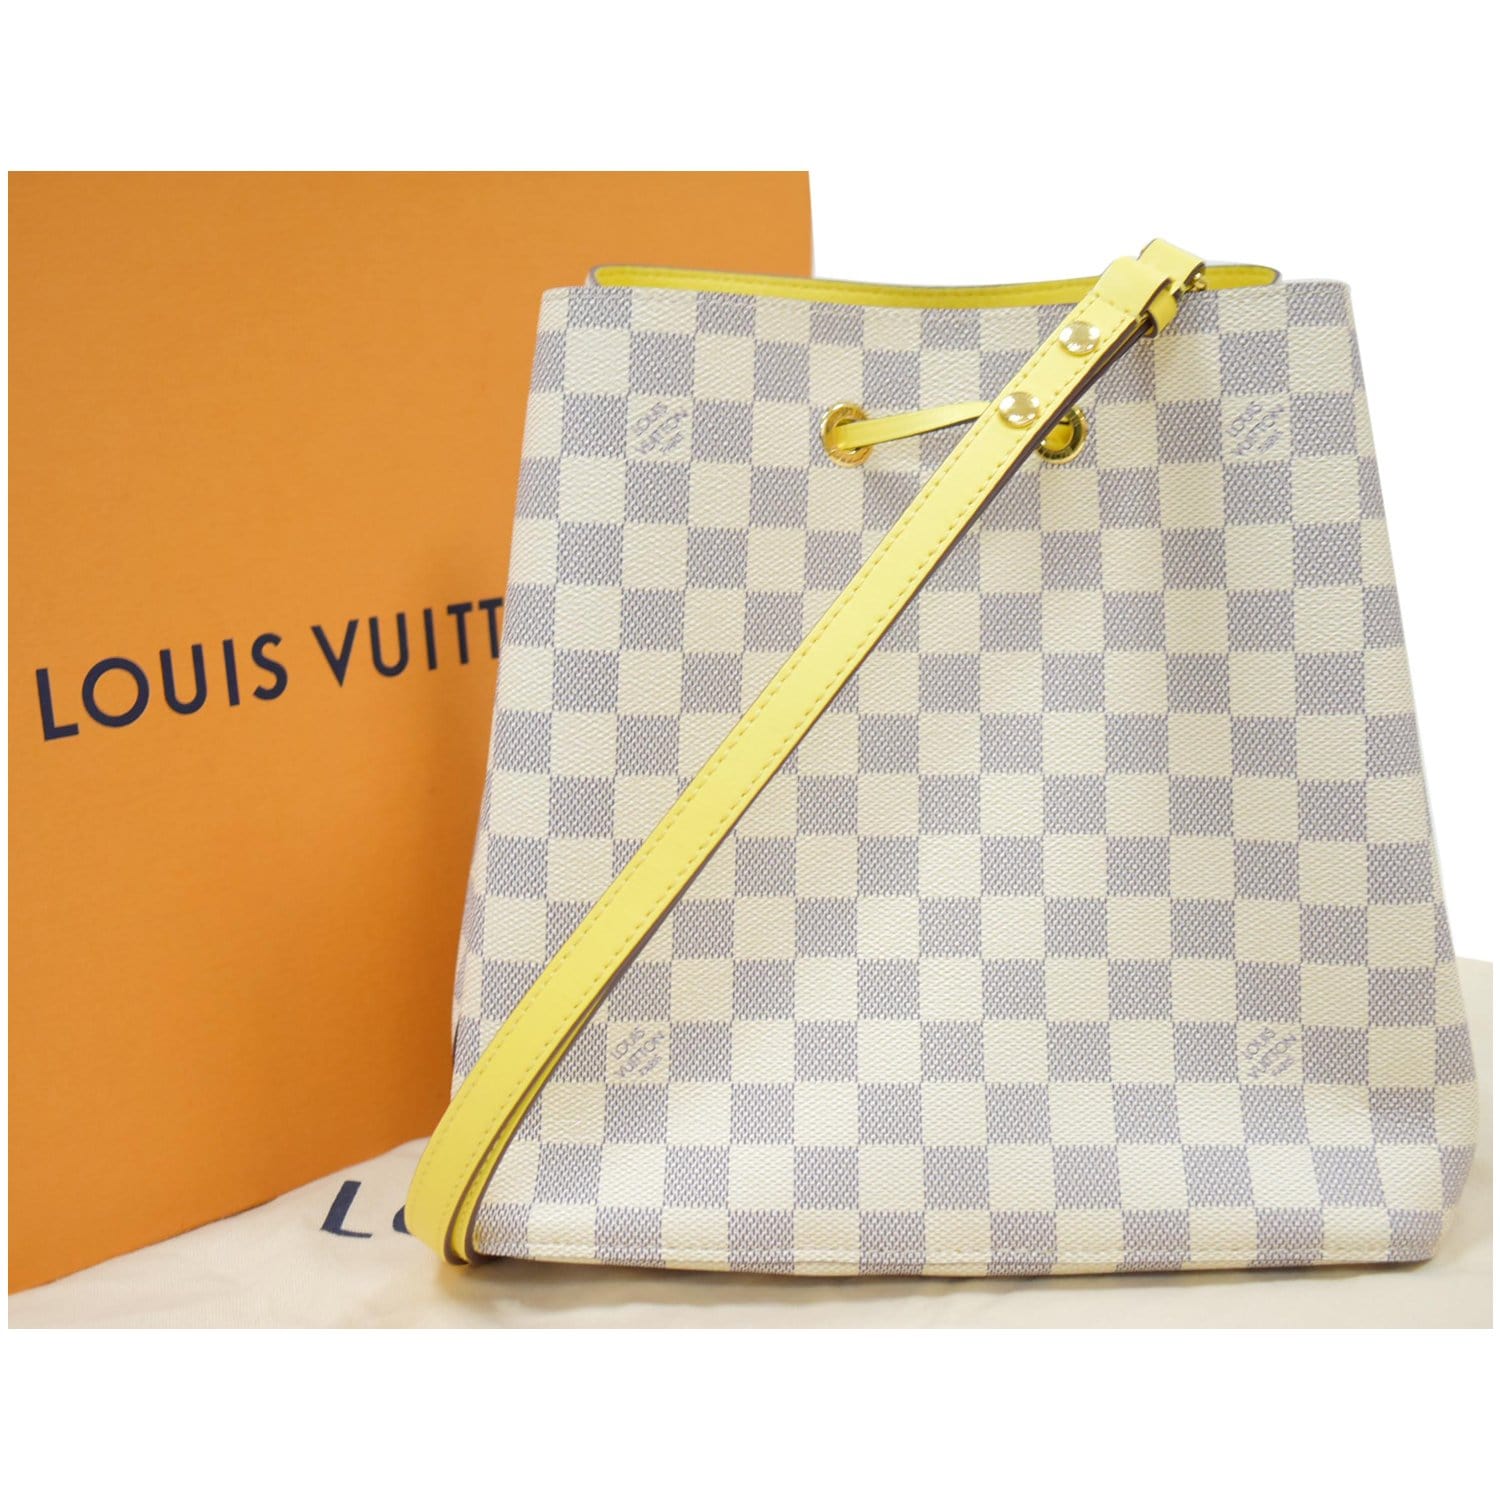 NEW!!! Sold Out!Authentic Louis Vuitton Damier Azur NeoNoe Bag